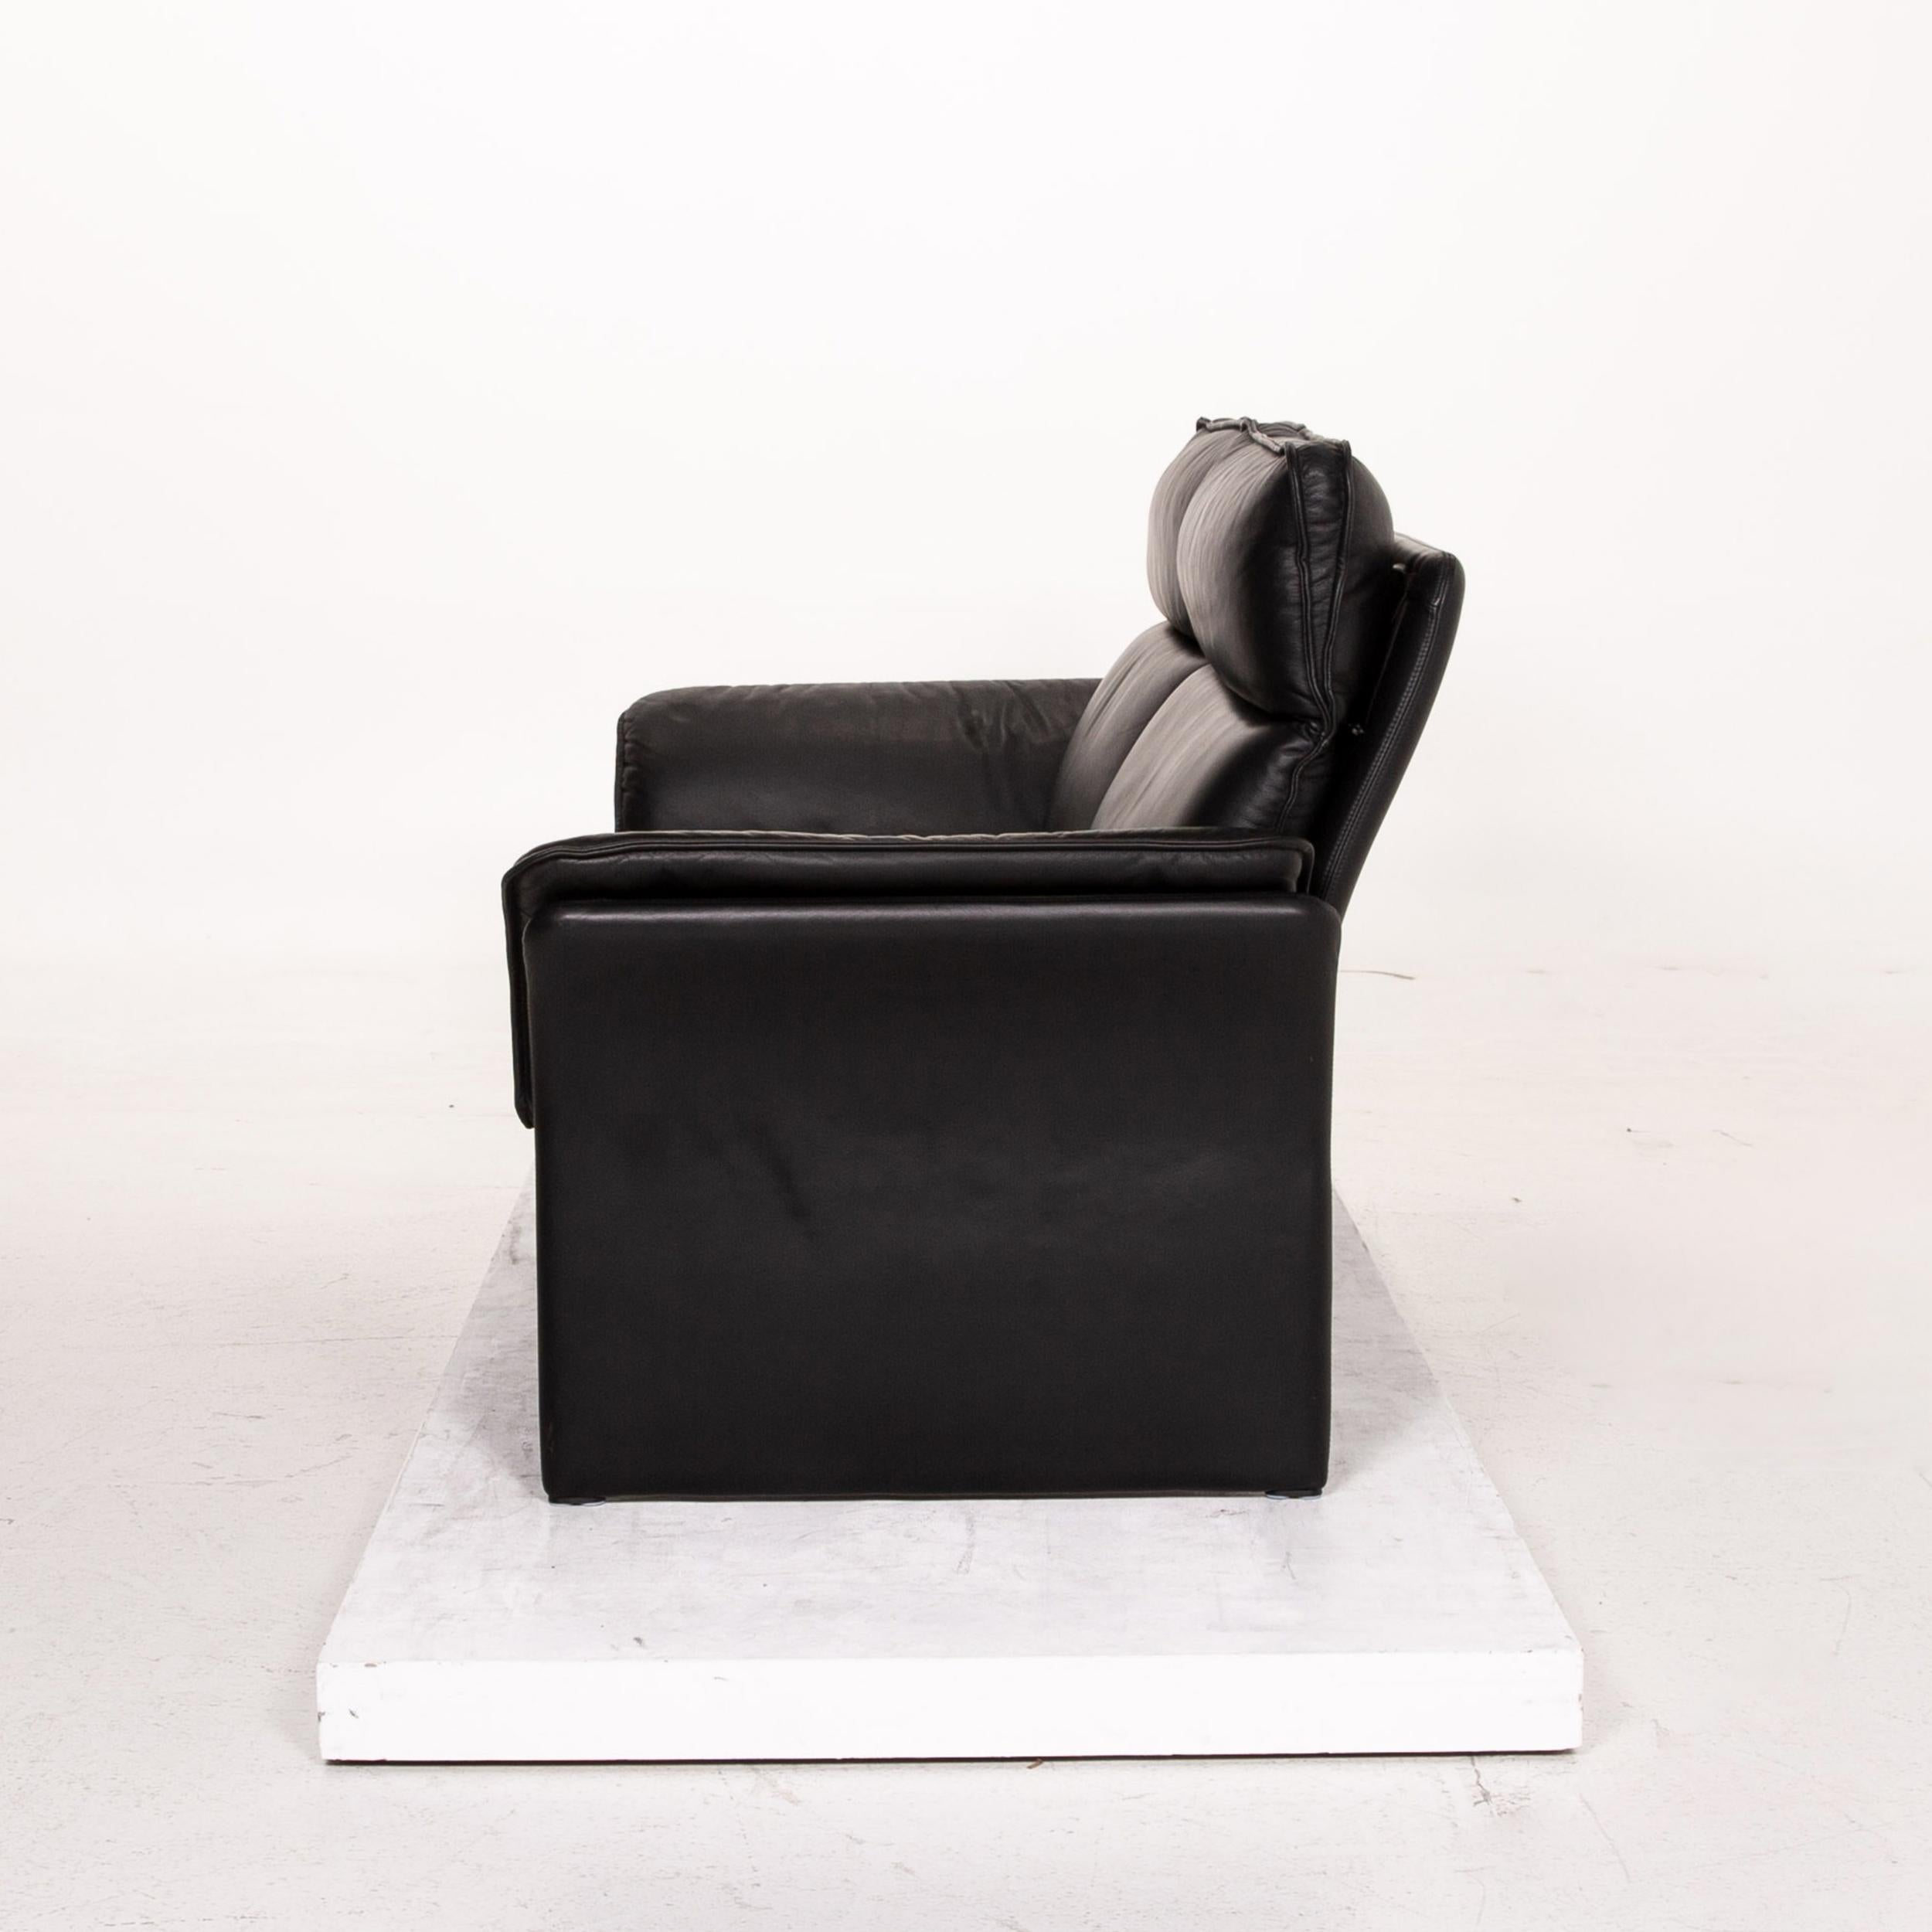 Three-Point Scala Leather Sofa Set Black 1 Three-Seat 1 Two-Seat 14